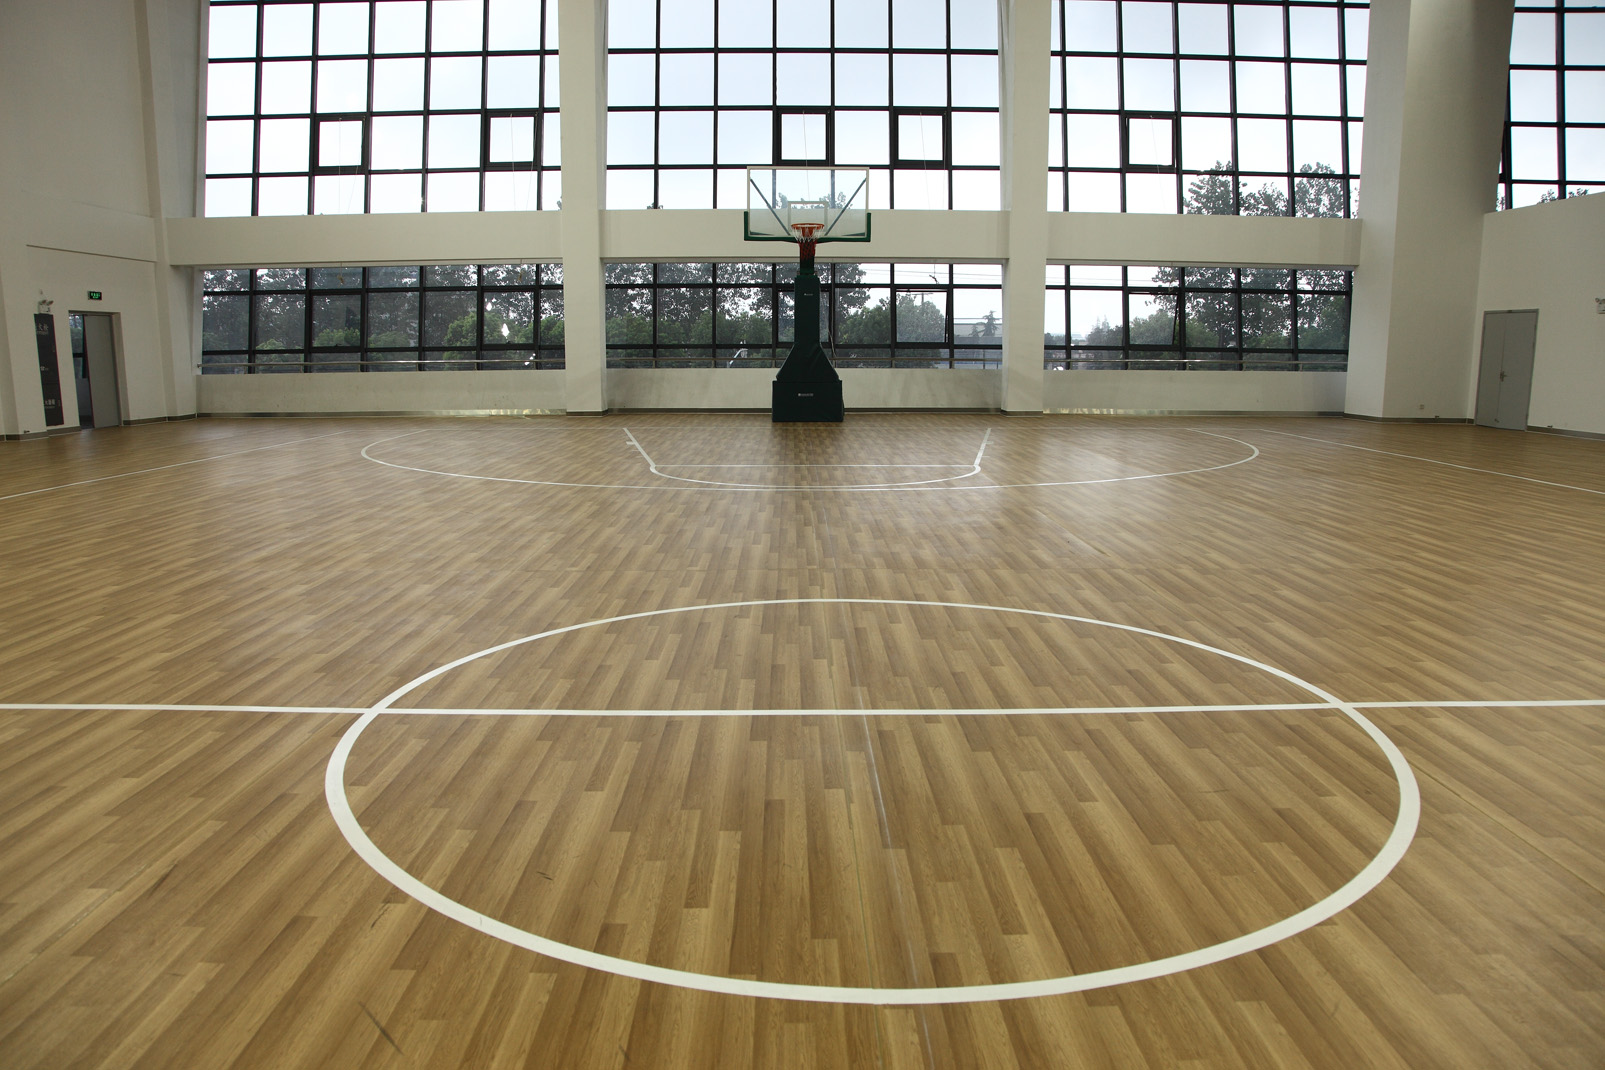 篮球馆pvc塑胶地板